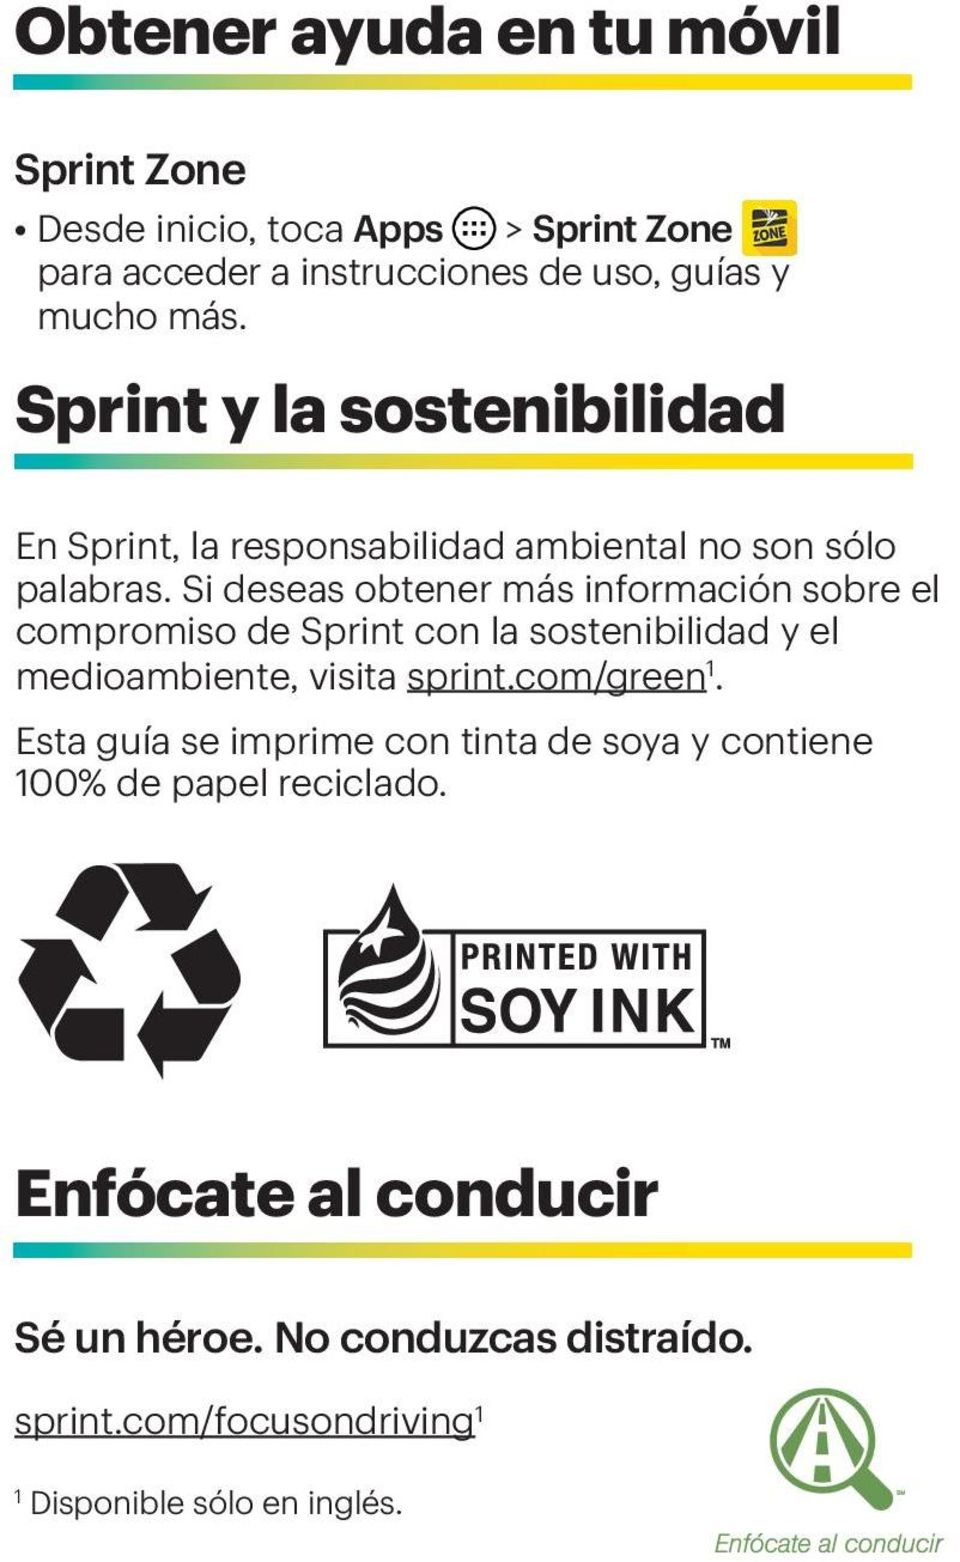 Si deseas obtener más información sobre el compromiso de Sprint con la sostenibilidad y el medioambiente, visita sprint.com/green 1.